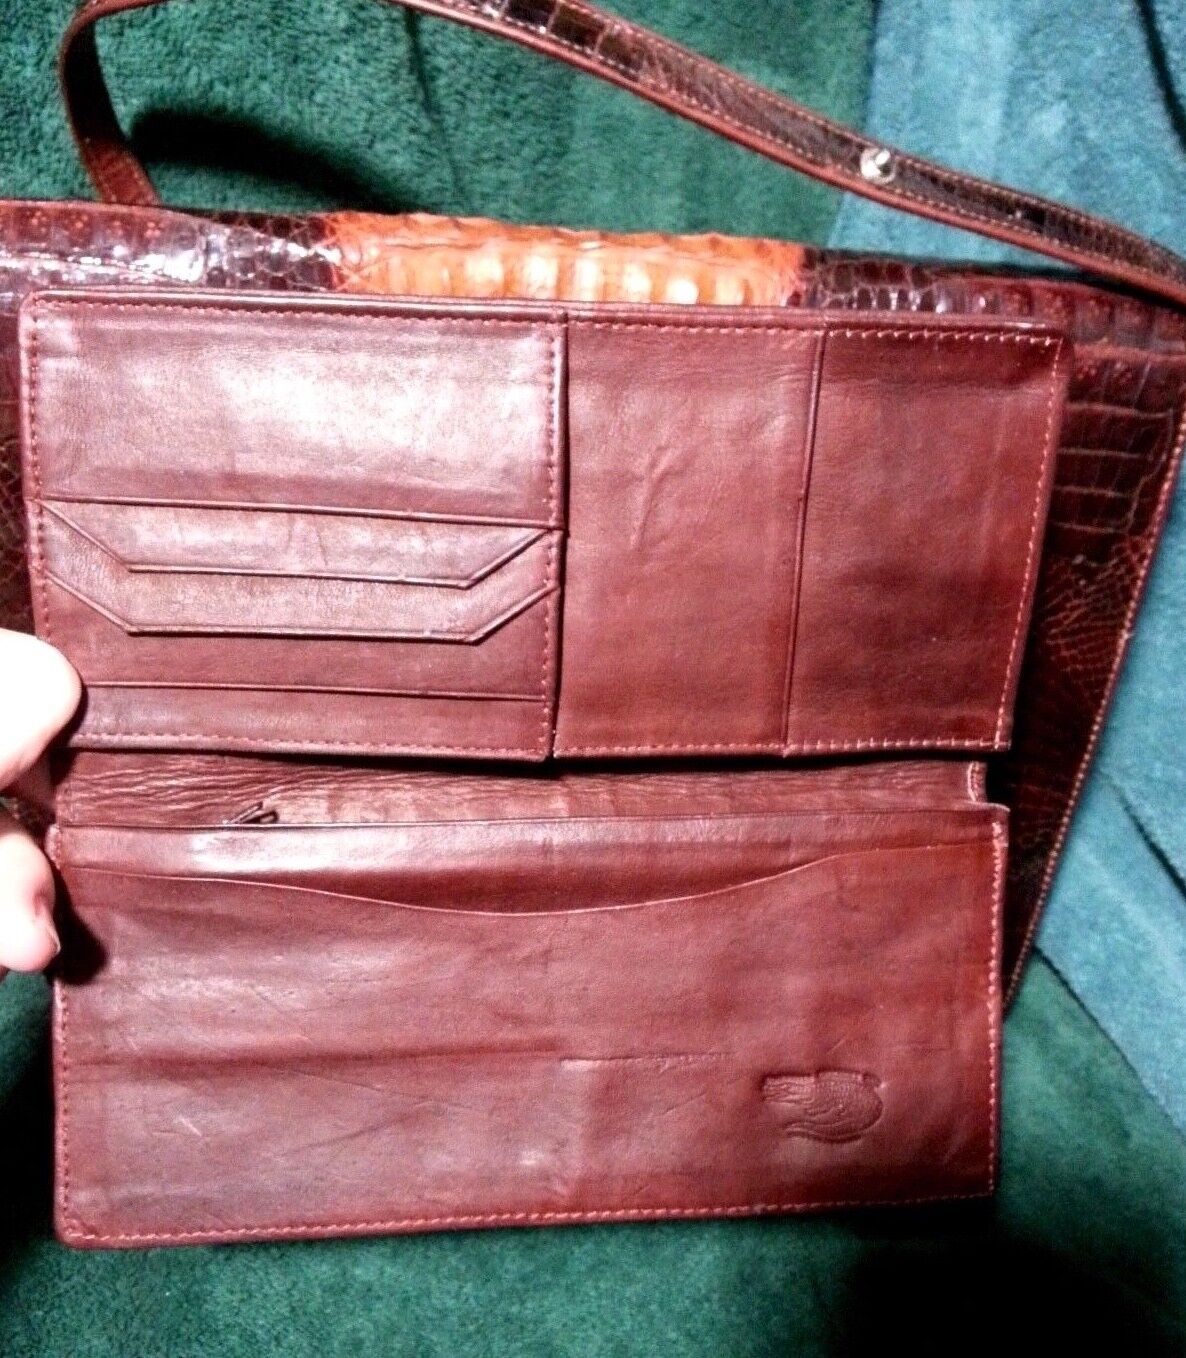 Vintage Genuine Crocodile Convertible Handbag & Wallet Unbranded - фотография #9